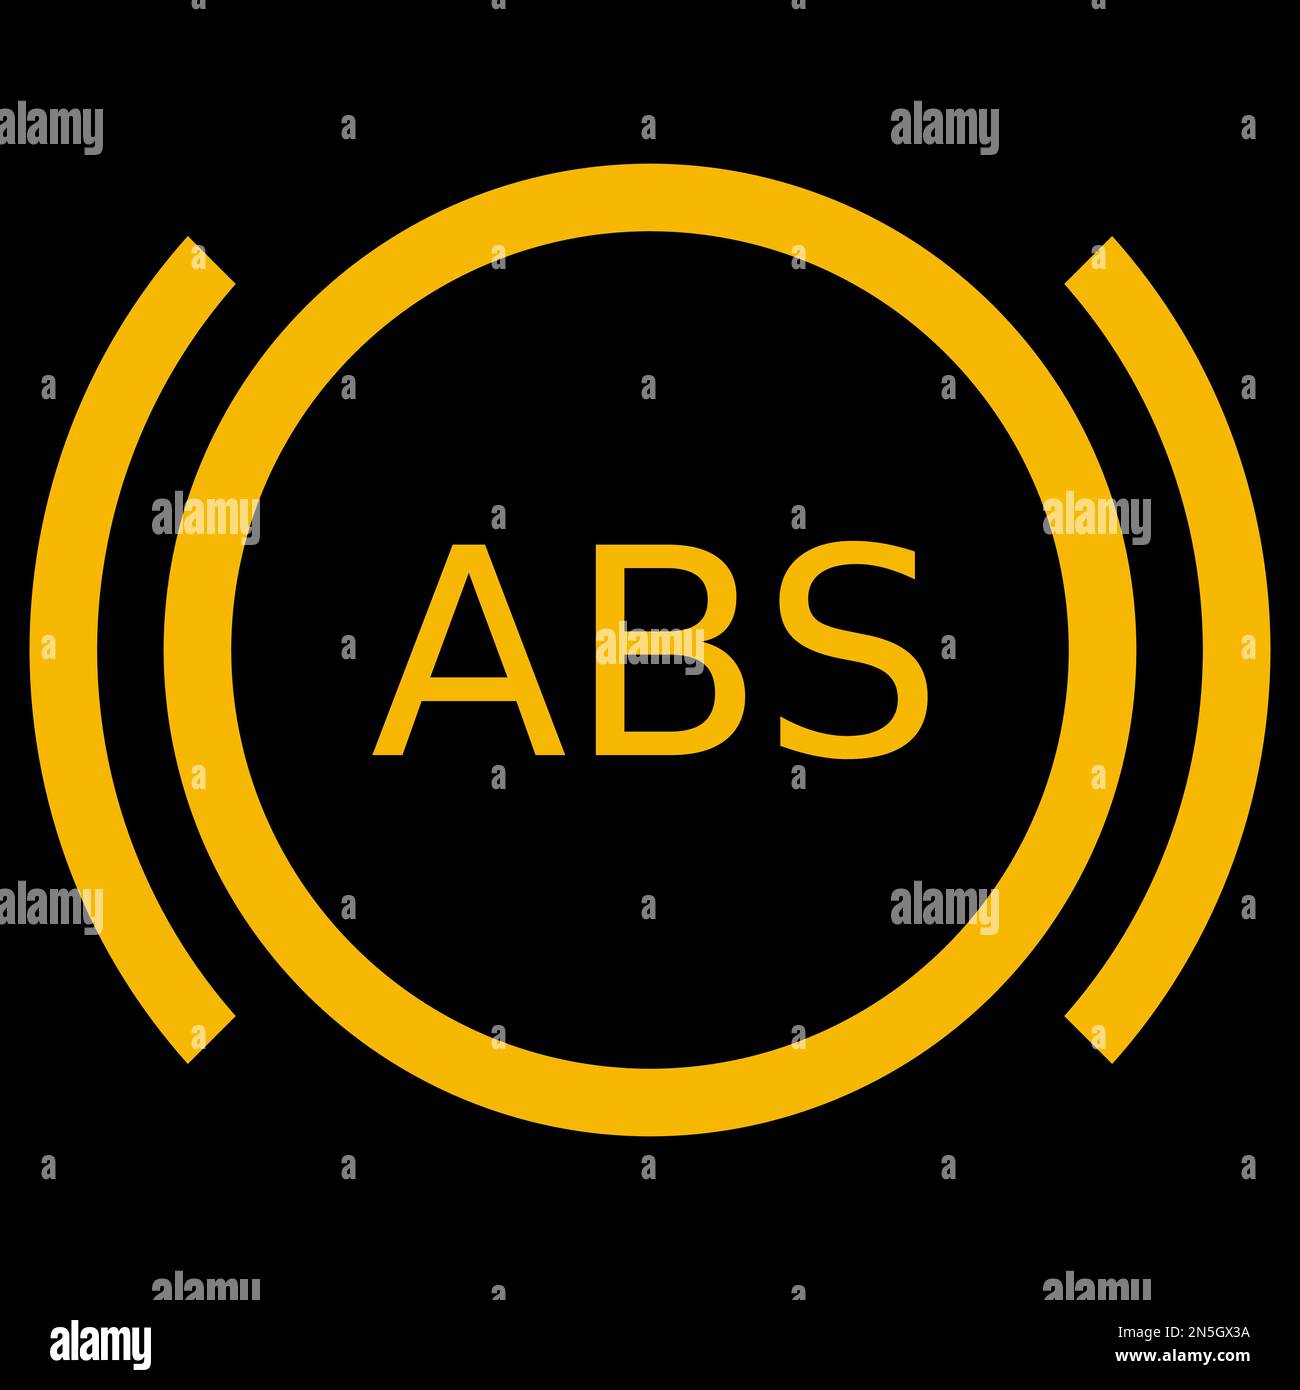 Image vectorielle orange sur fond noir d'un témoin de tableau de bord pour système de freinage antiblocage Illustration de Vecteur